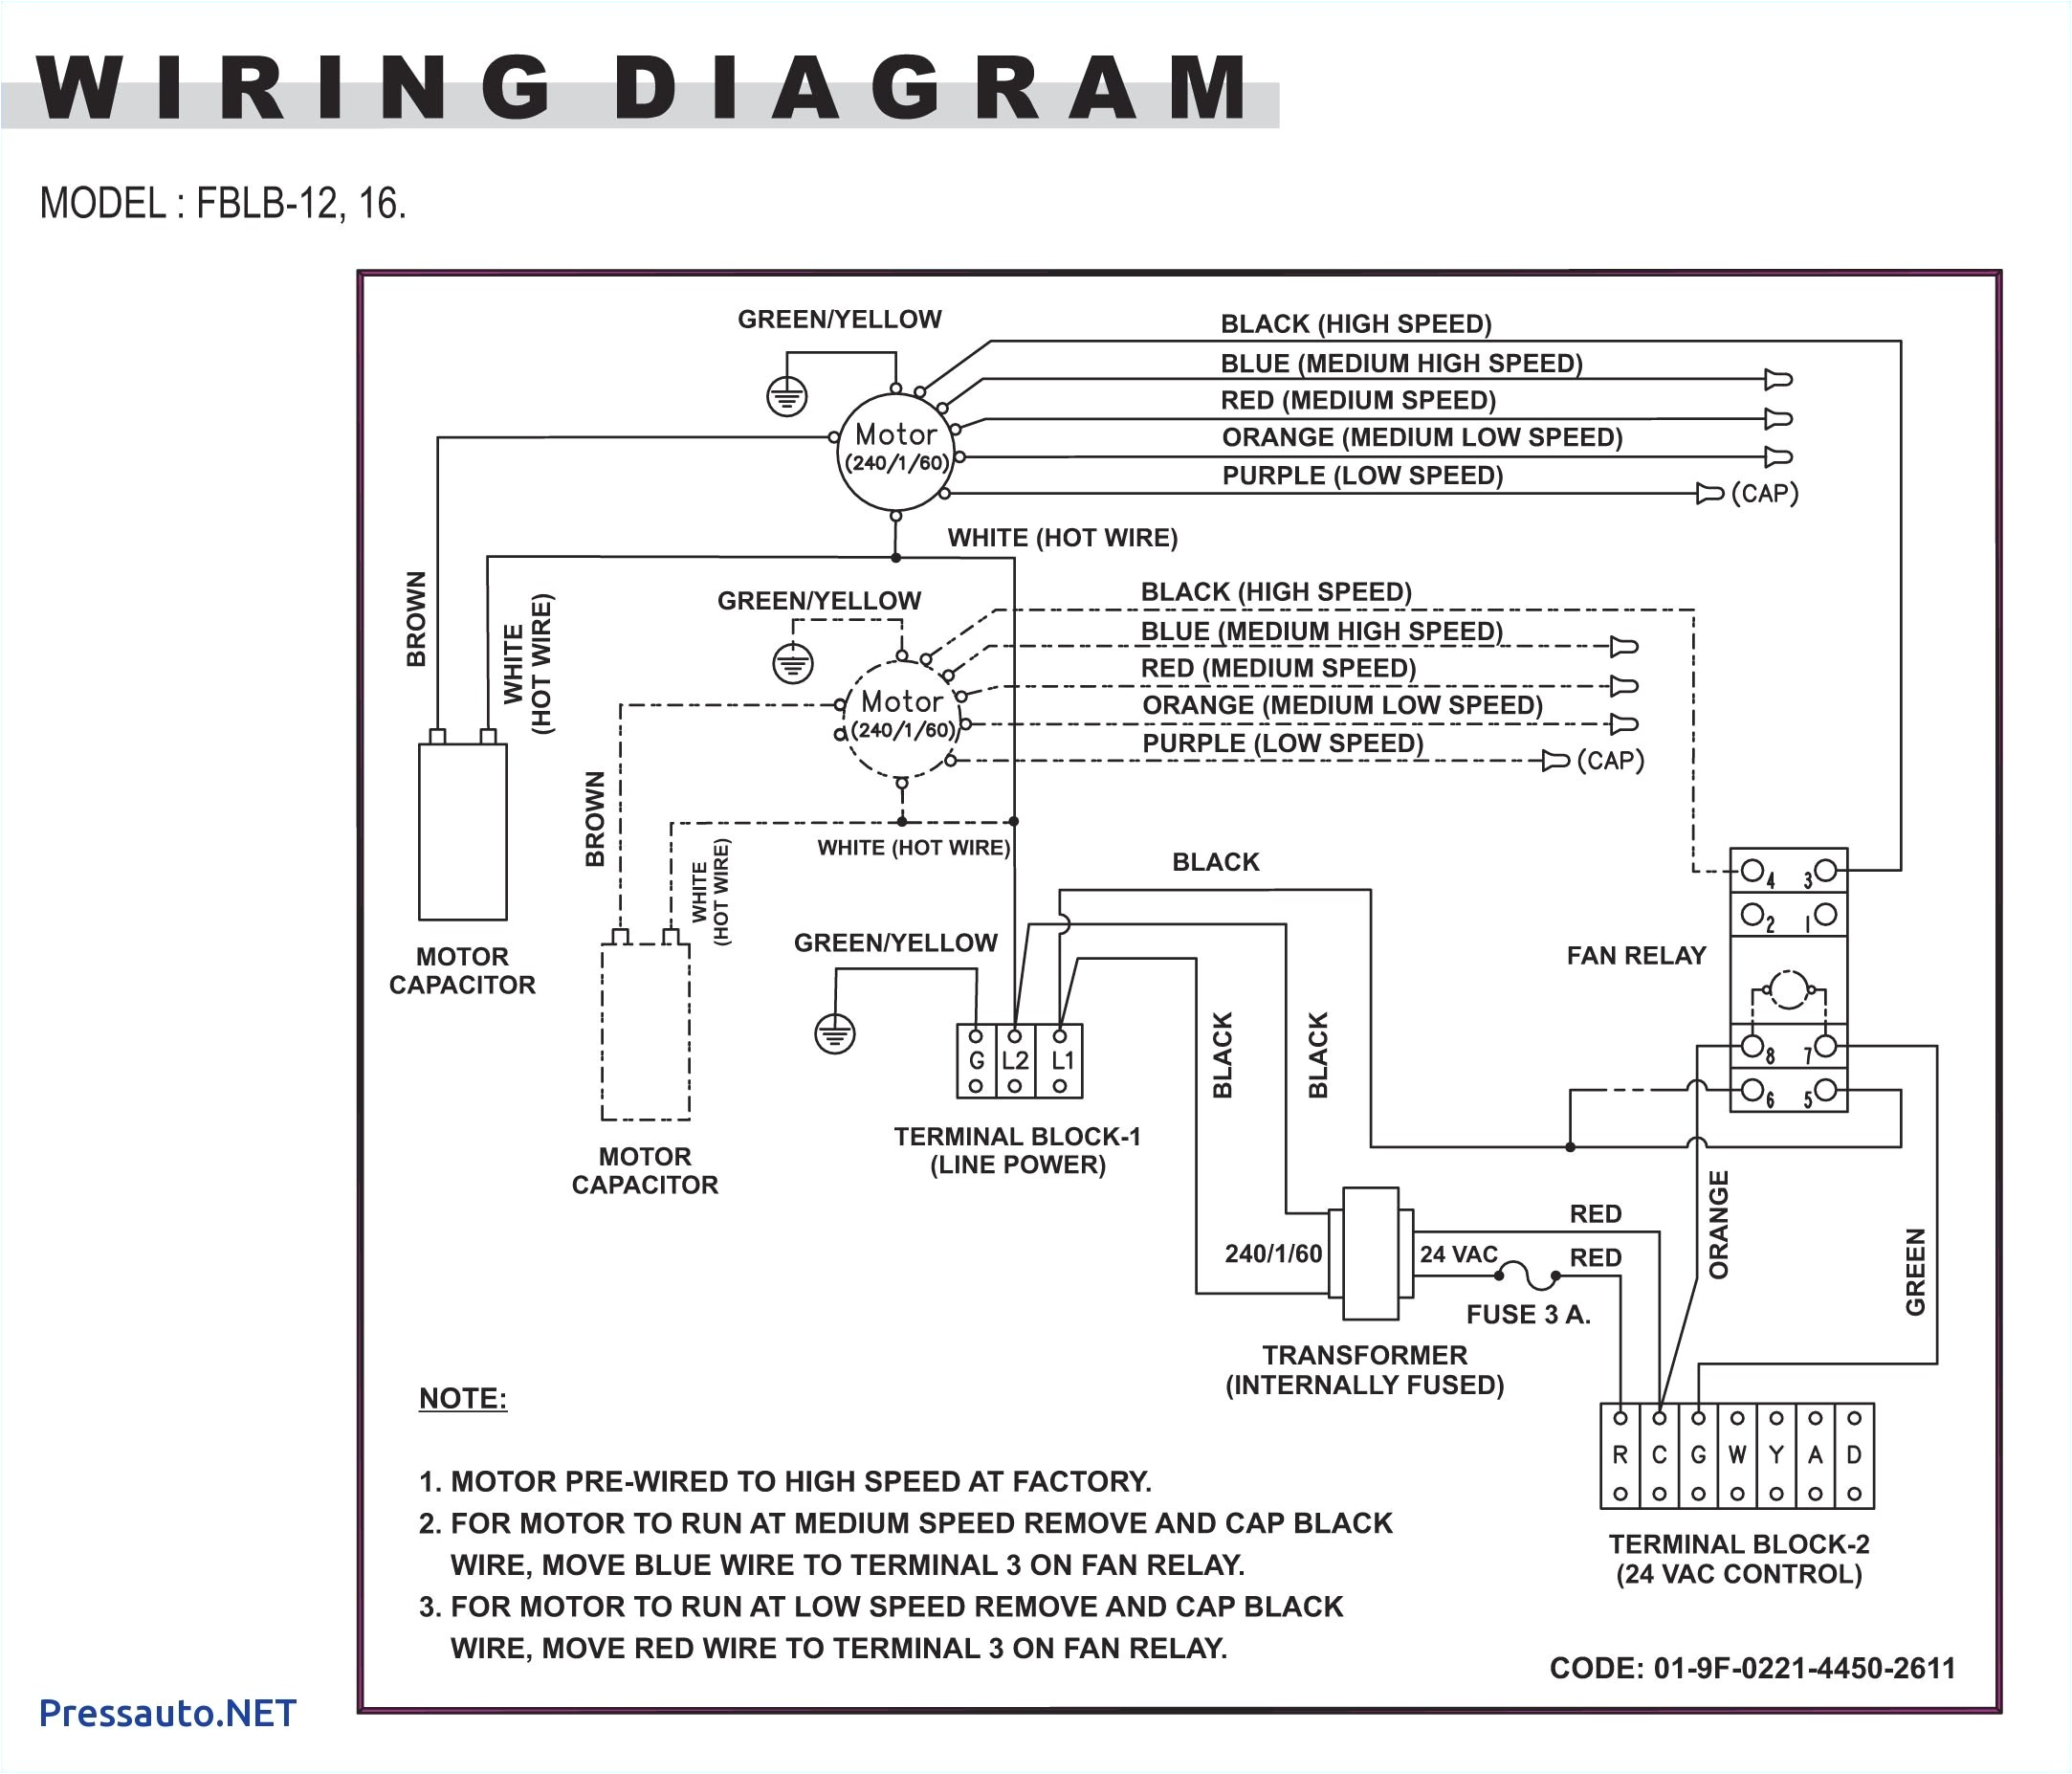 diagram 240v marley wiring plf1504da